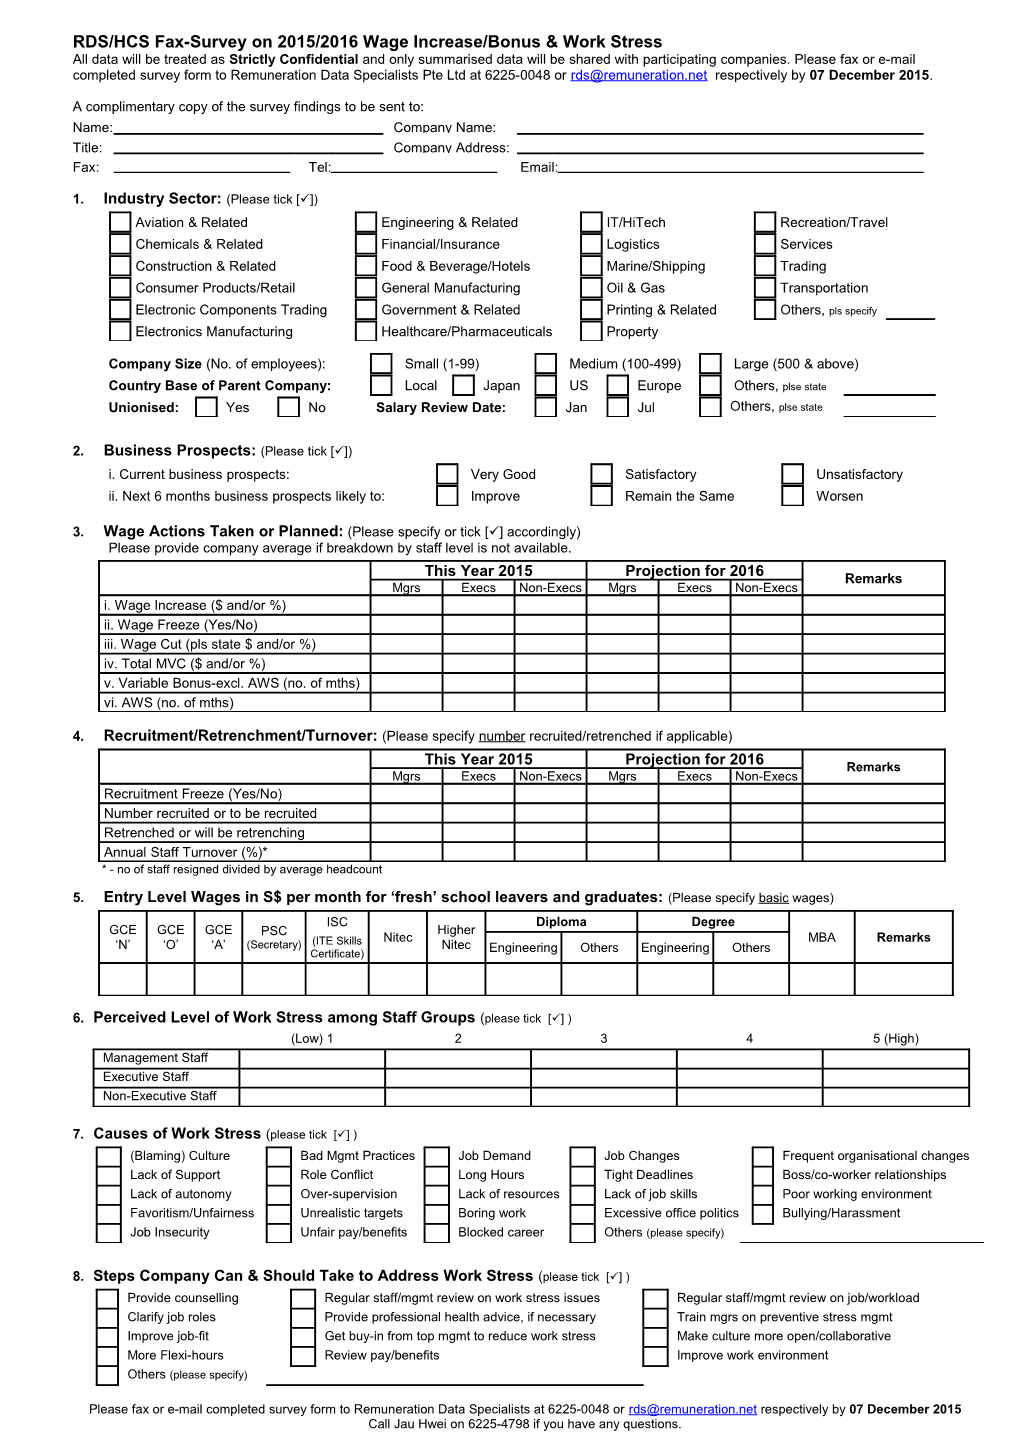 RDS Fax Survey 2011